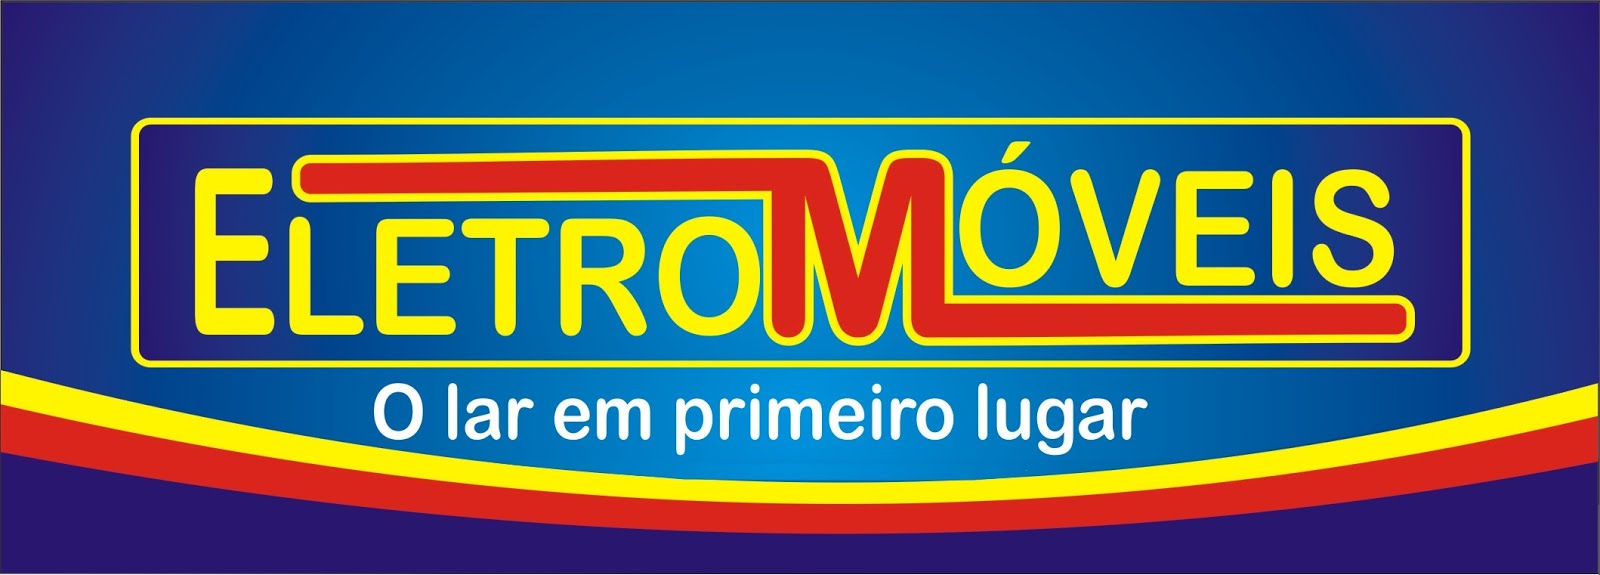 Eeletromóveis - Av. Rio Branco - Pedreiras-MA